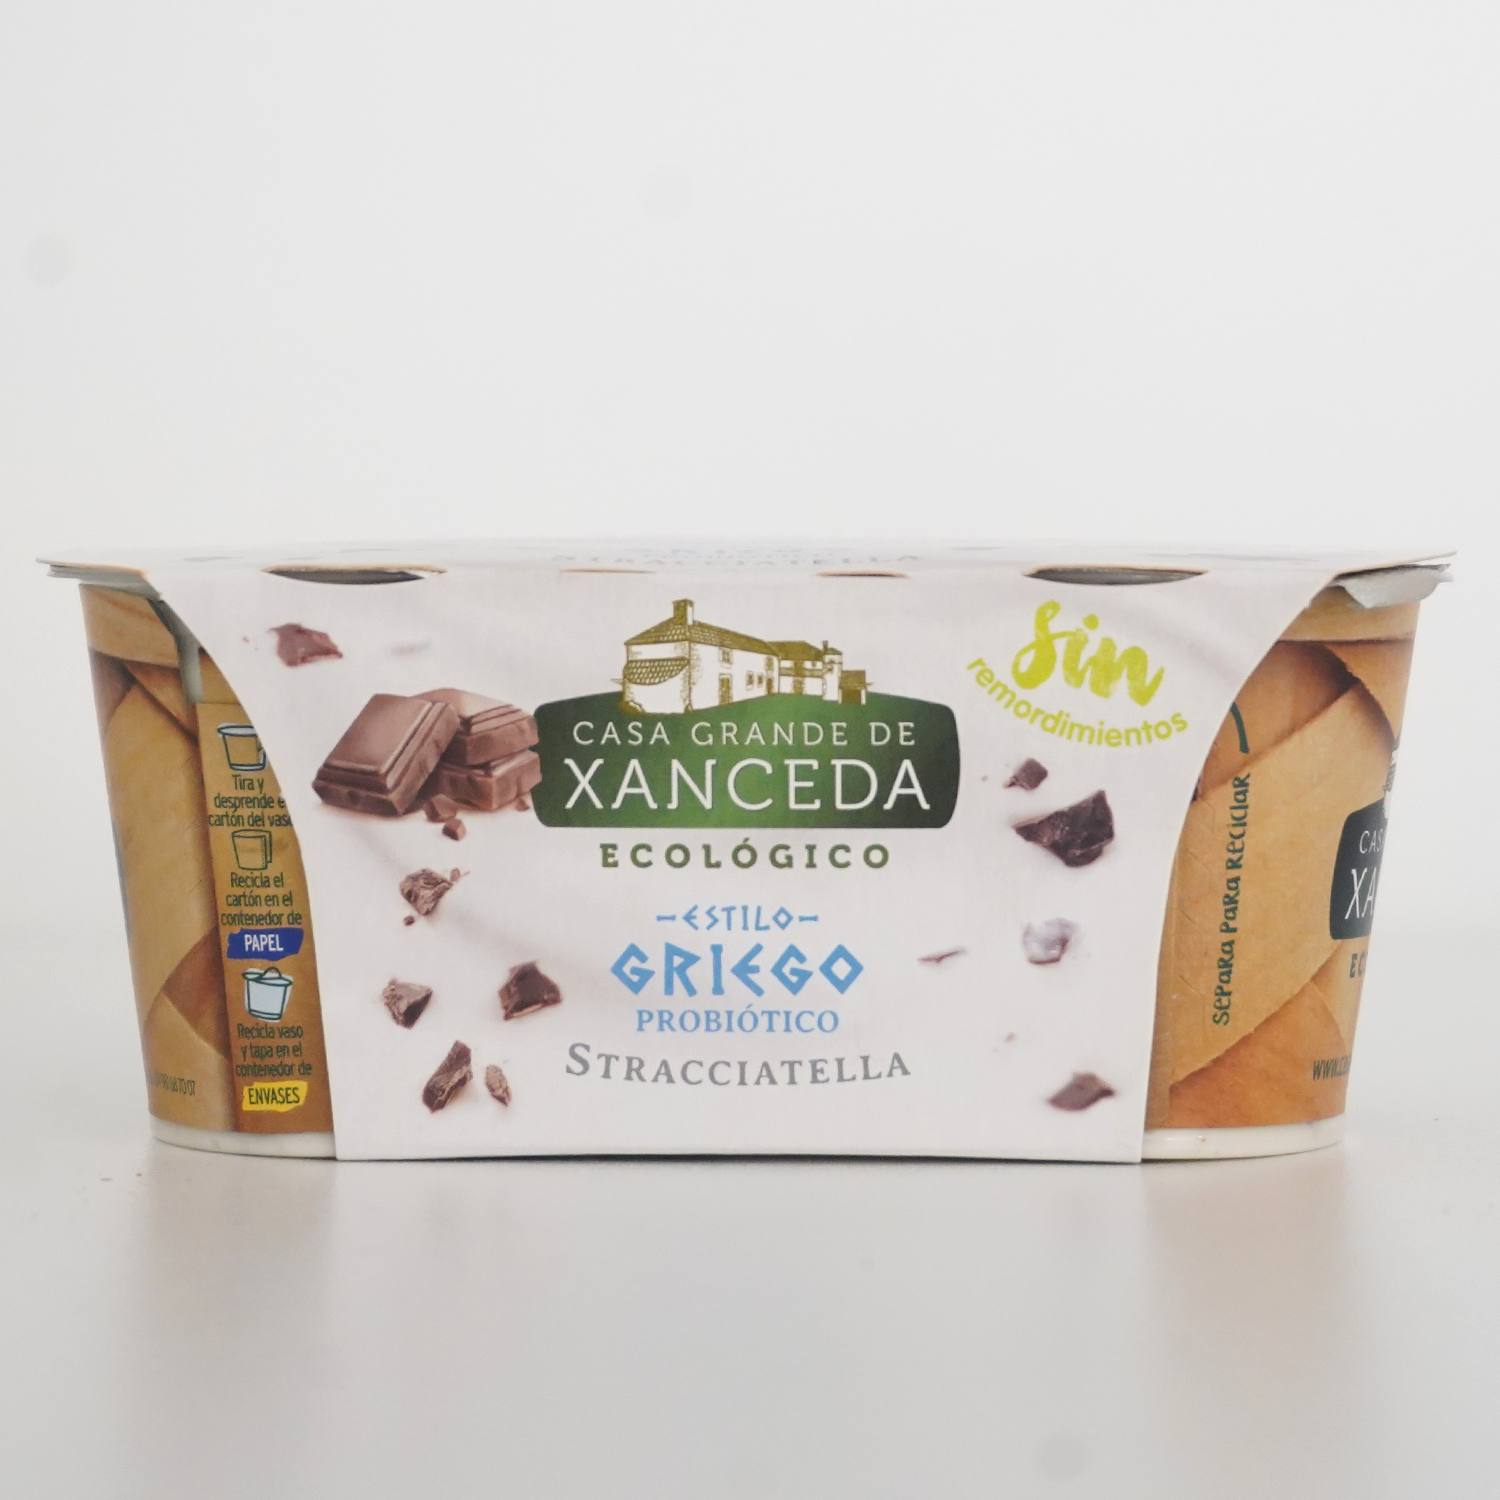 Pack de dos yogures estilo griego stracciatella marca Xanceda